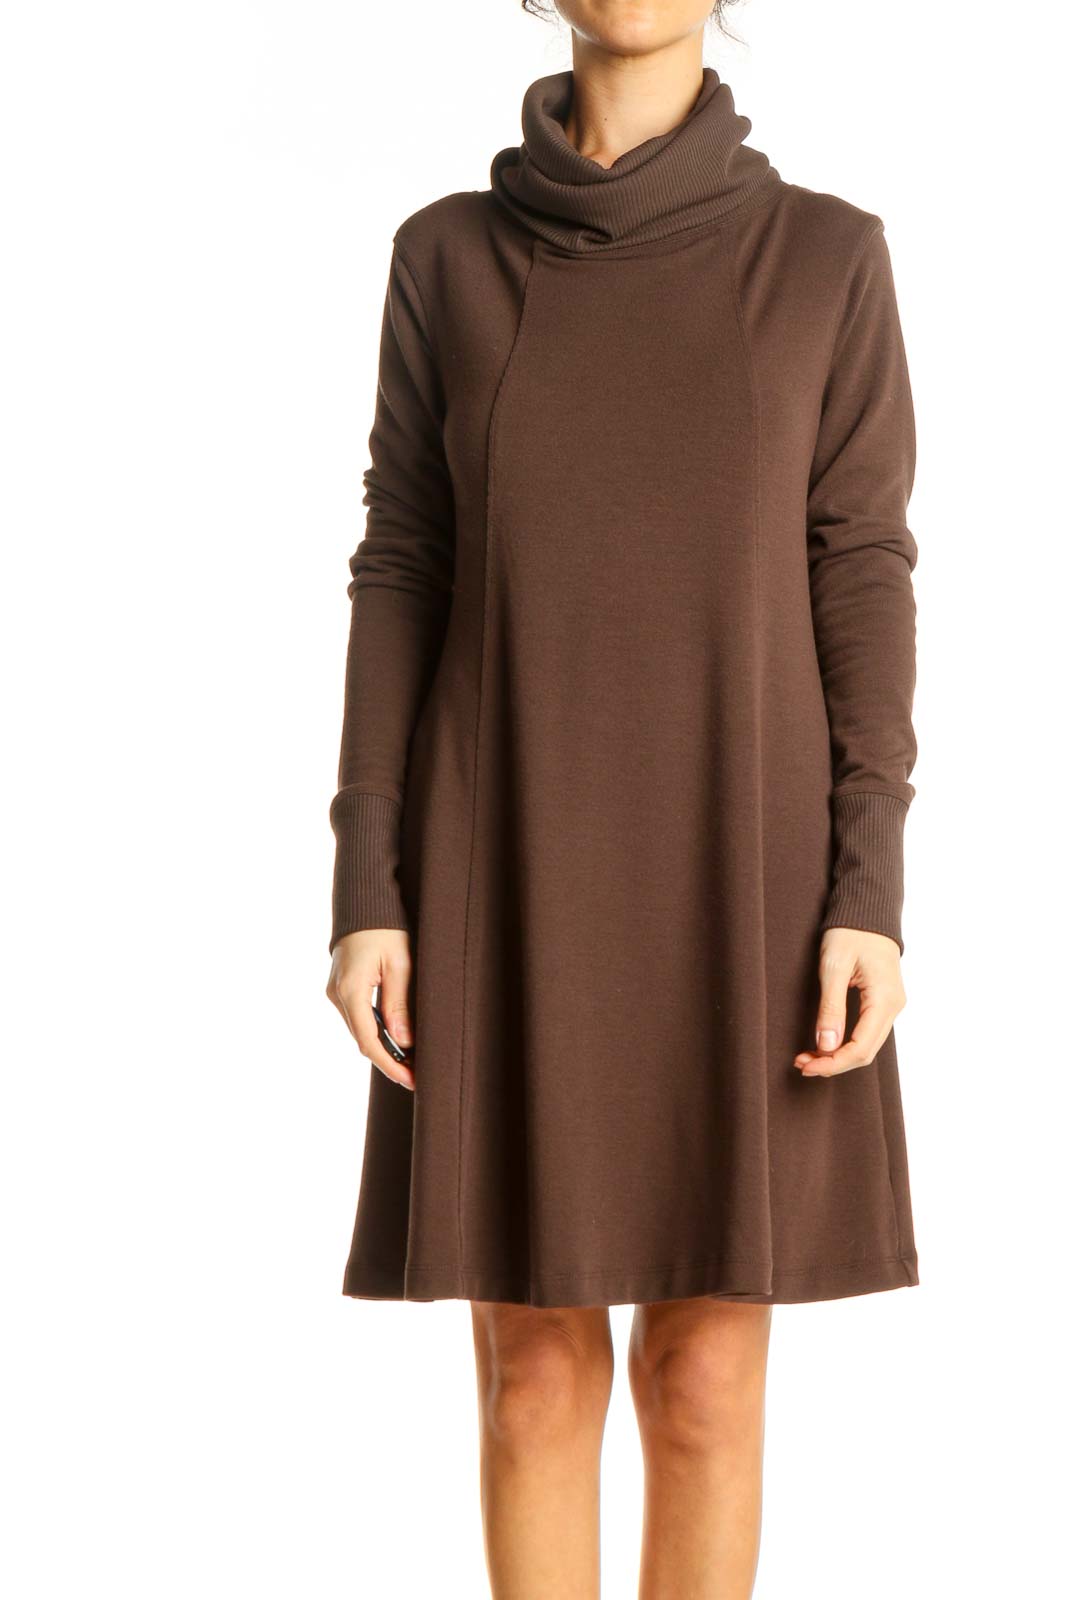 Brown Turtleneck Knit Dress Front